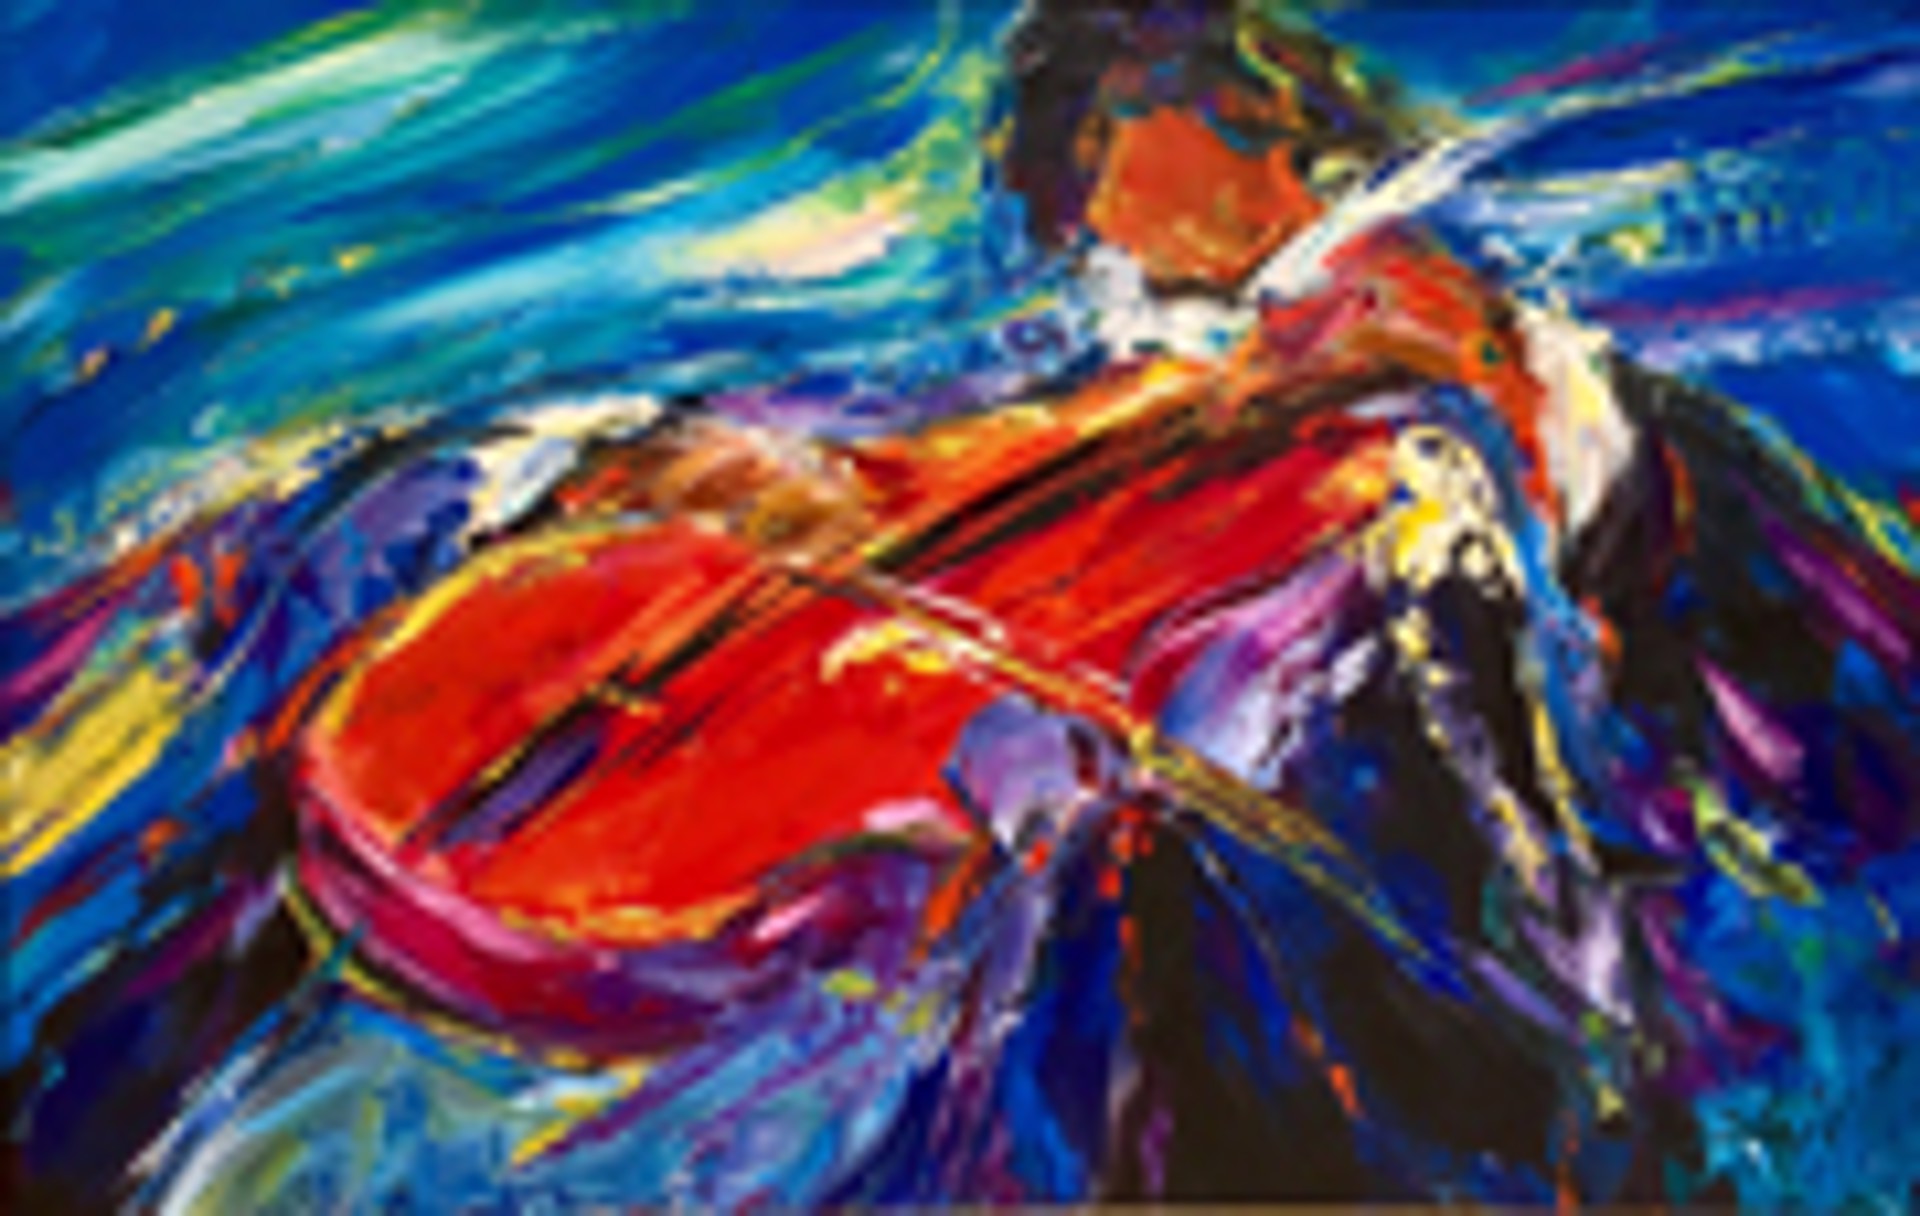 The Cellist by Duaiv